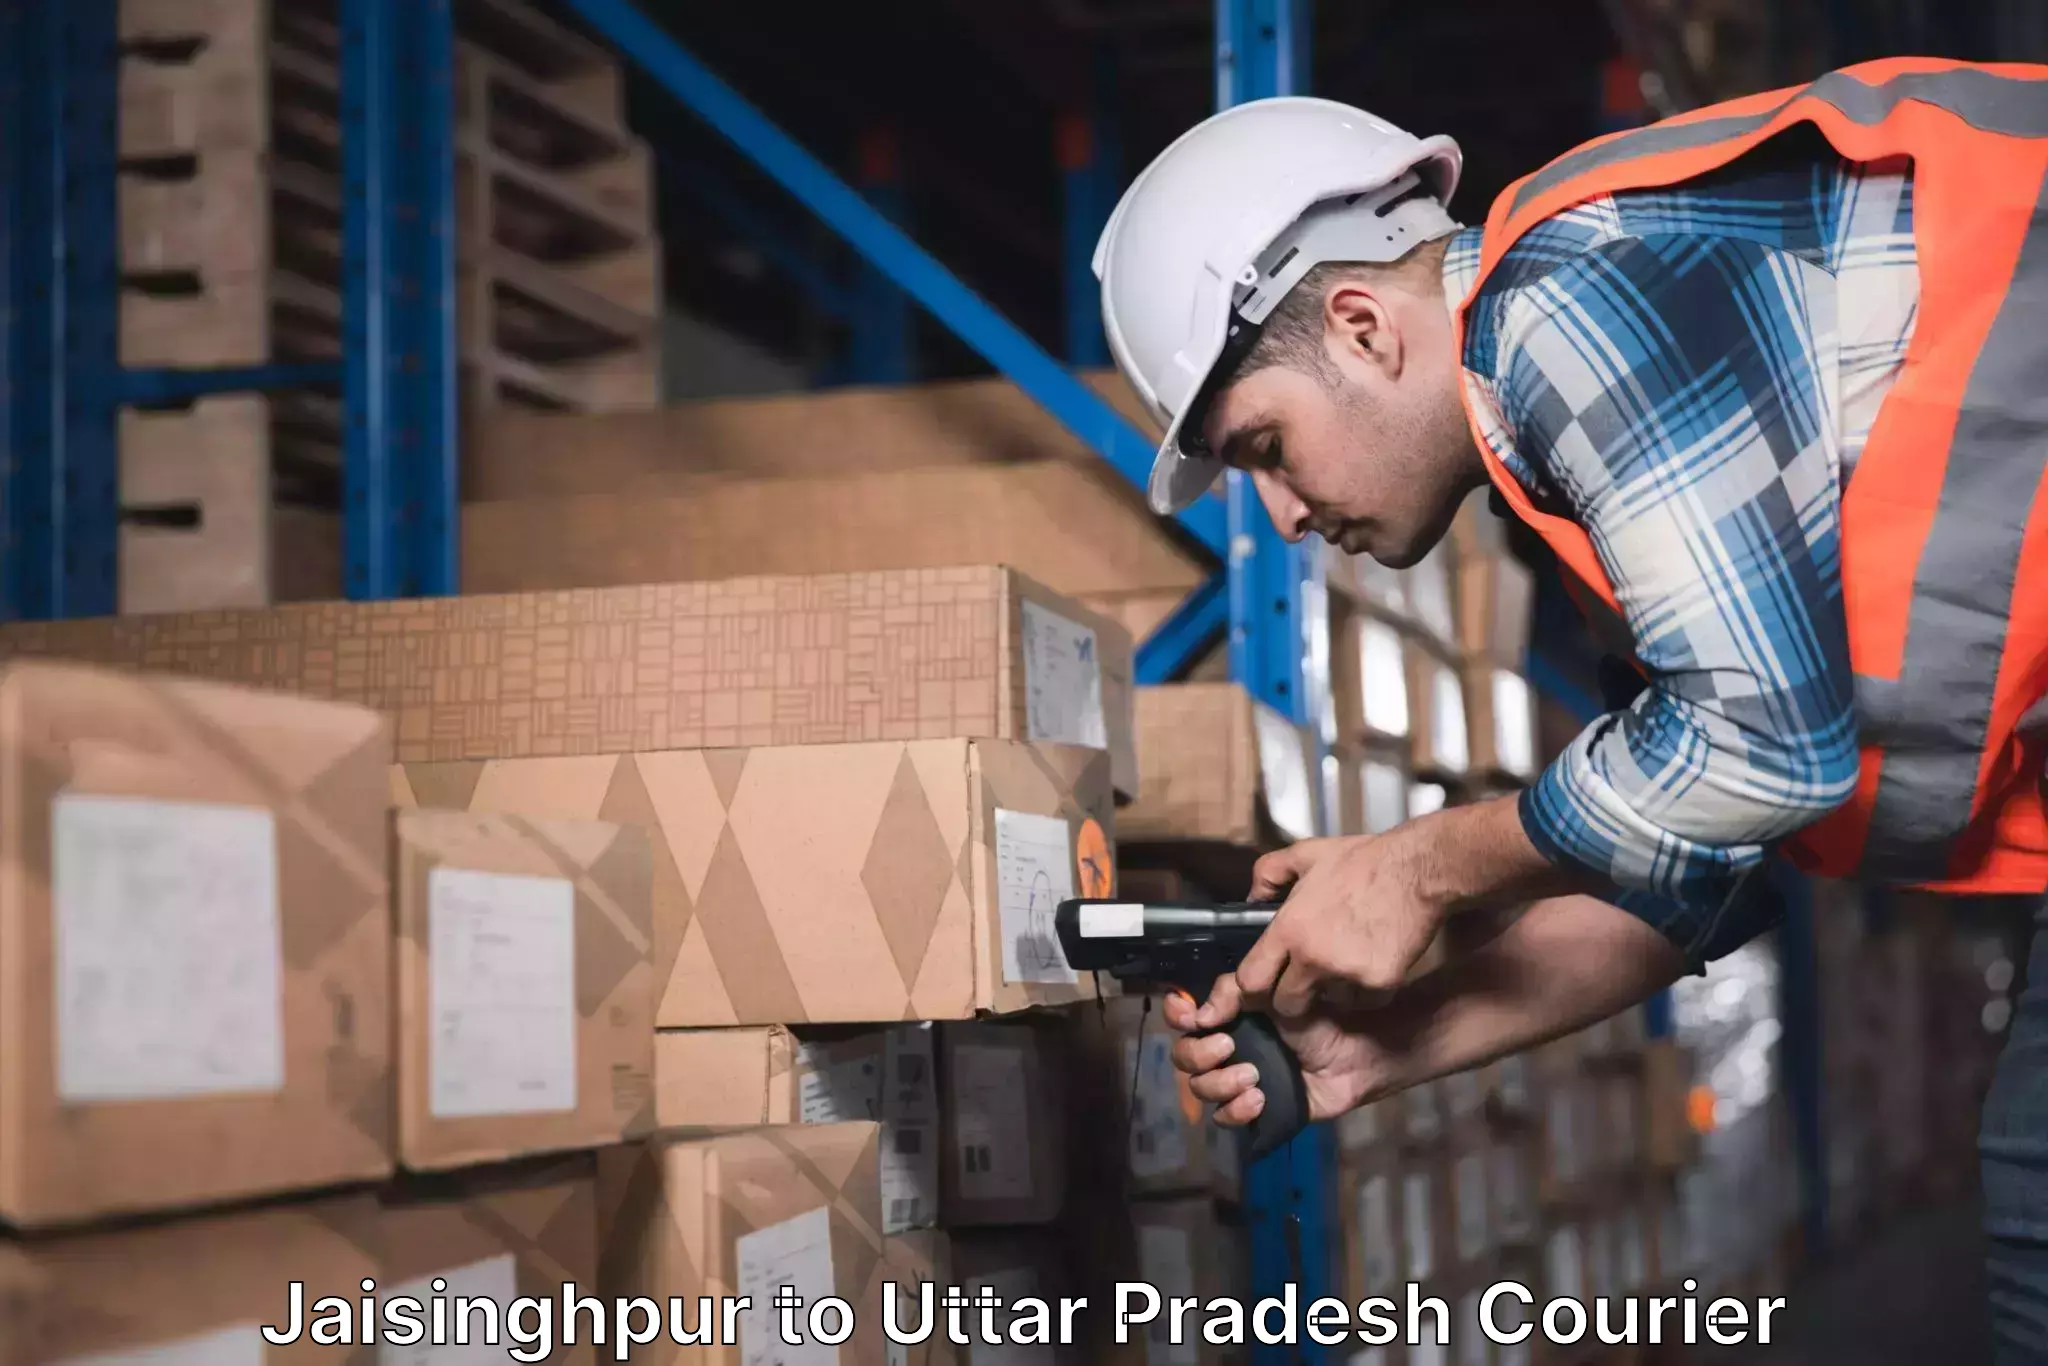 Nationwide shipping capabilities Jaisinghpur to Aligarh